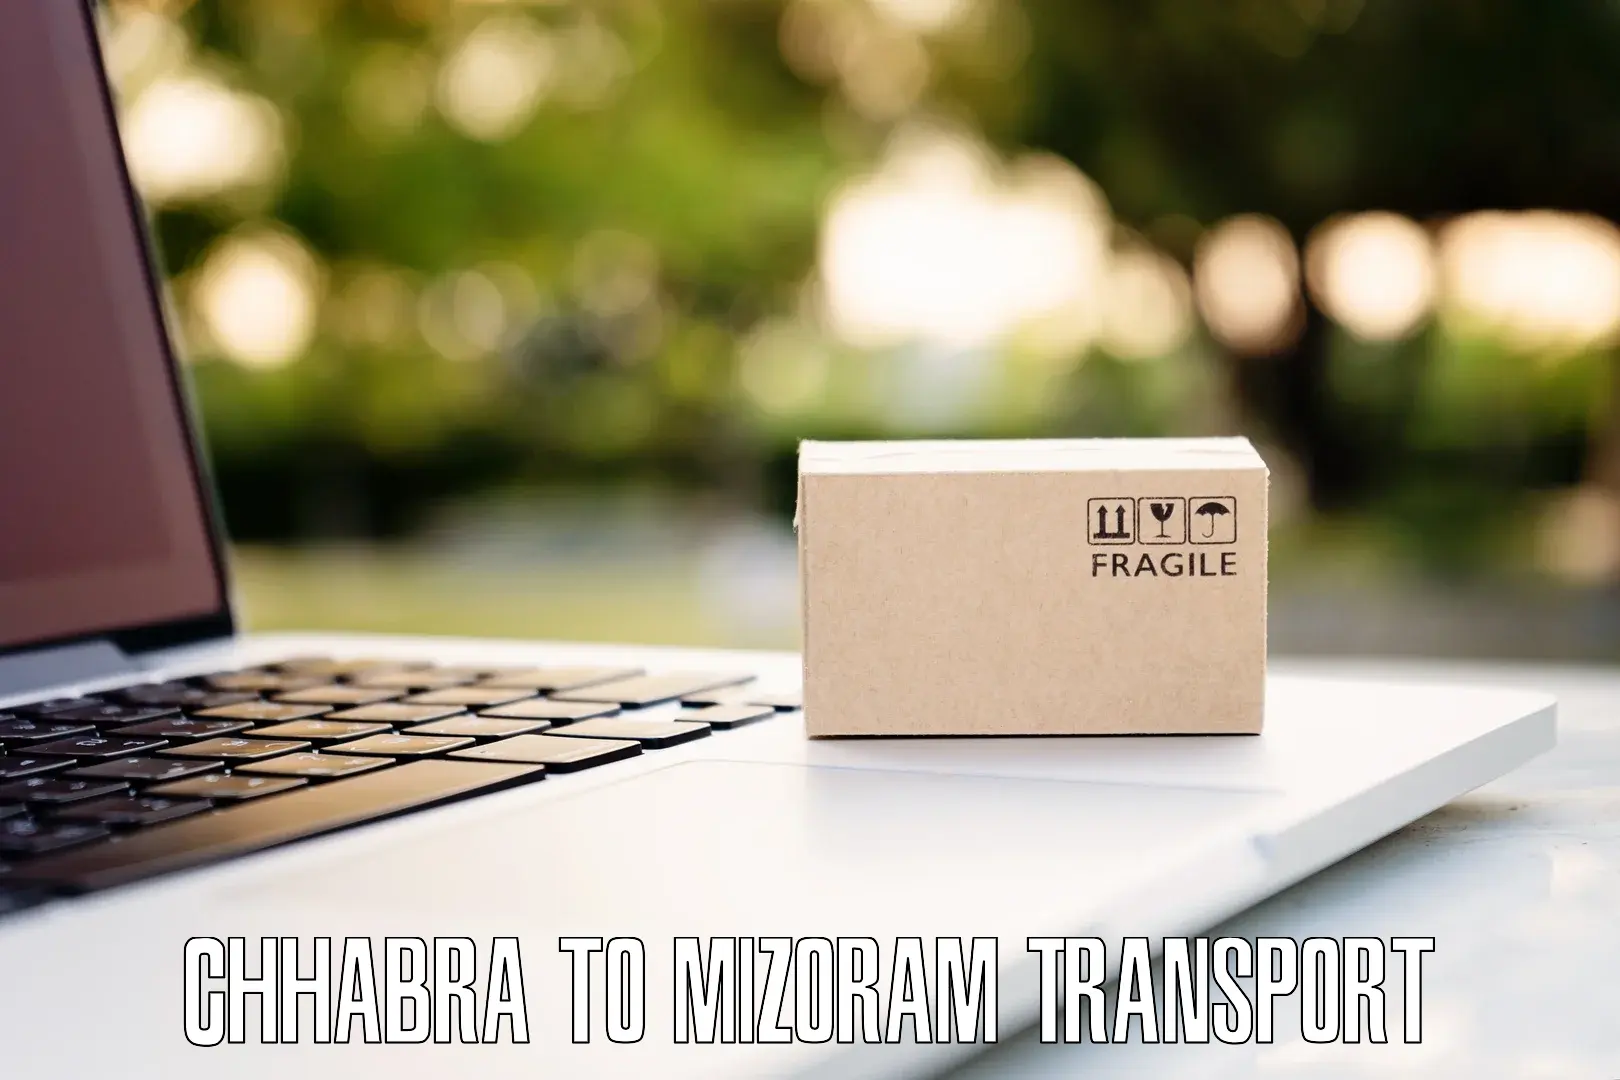 Online transport booking Chhabra to Mizoram